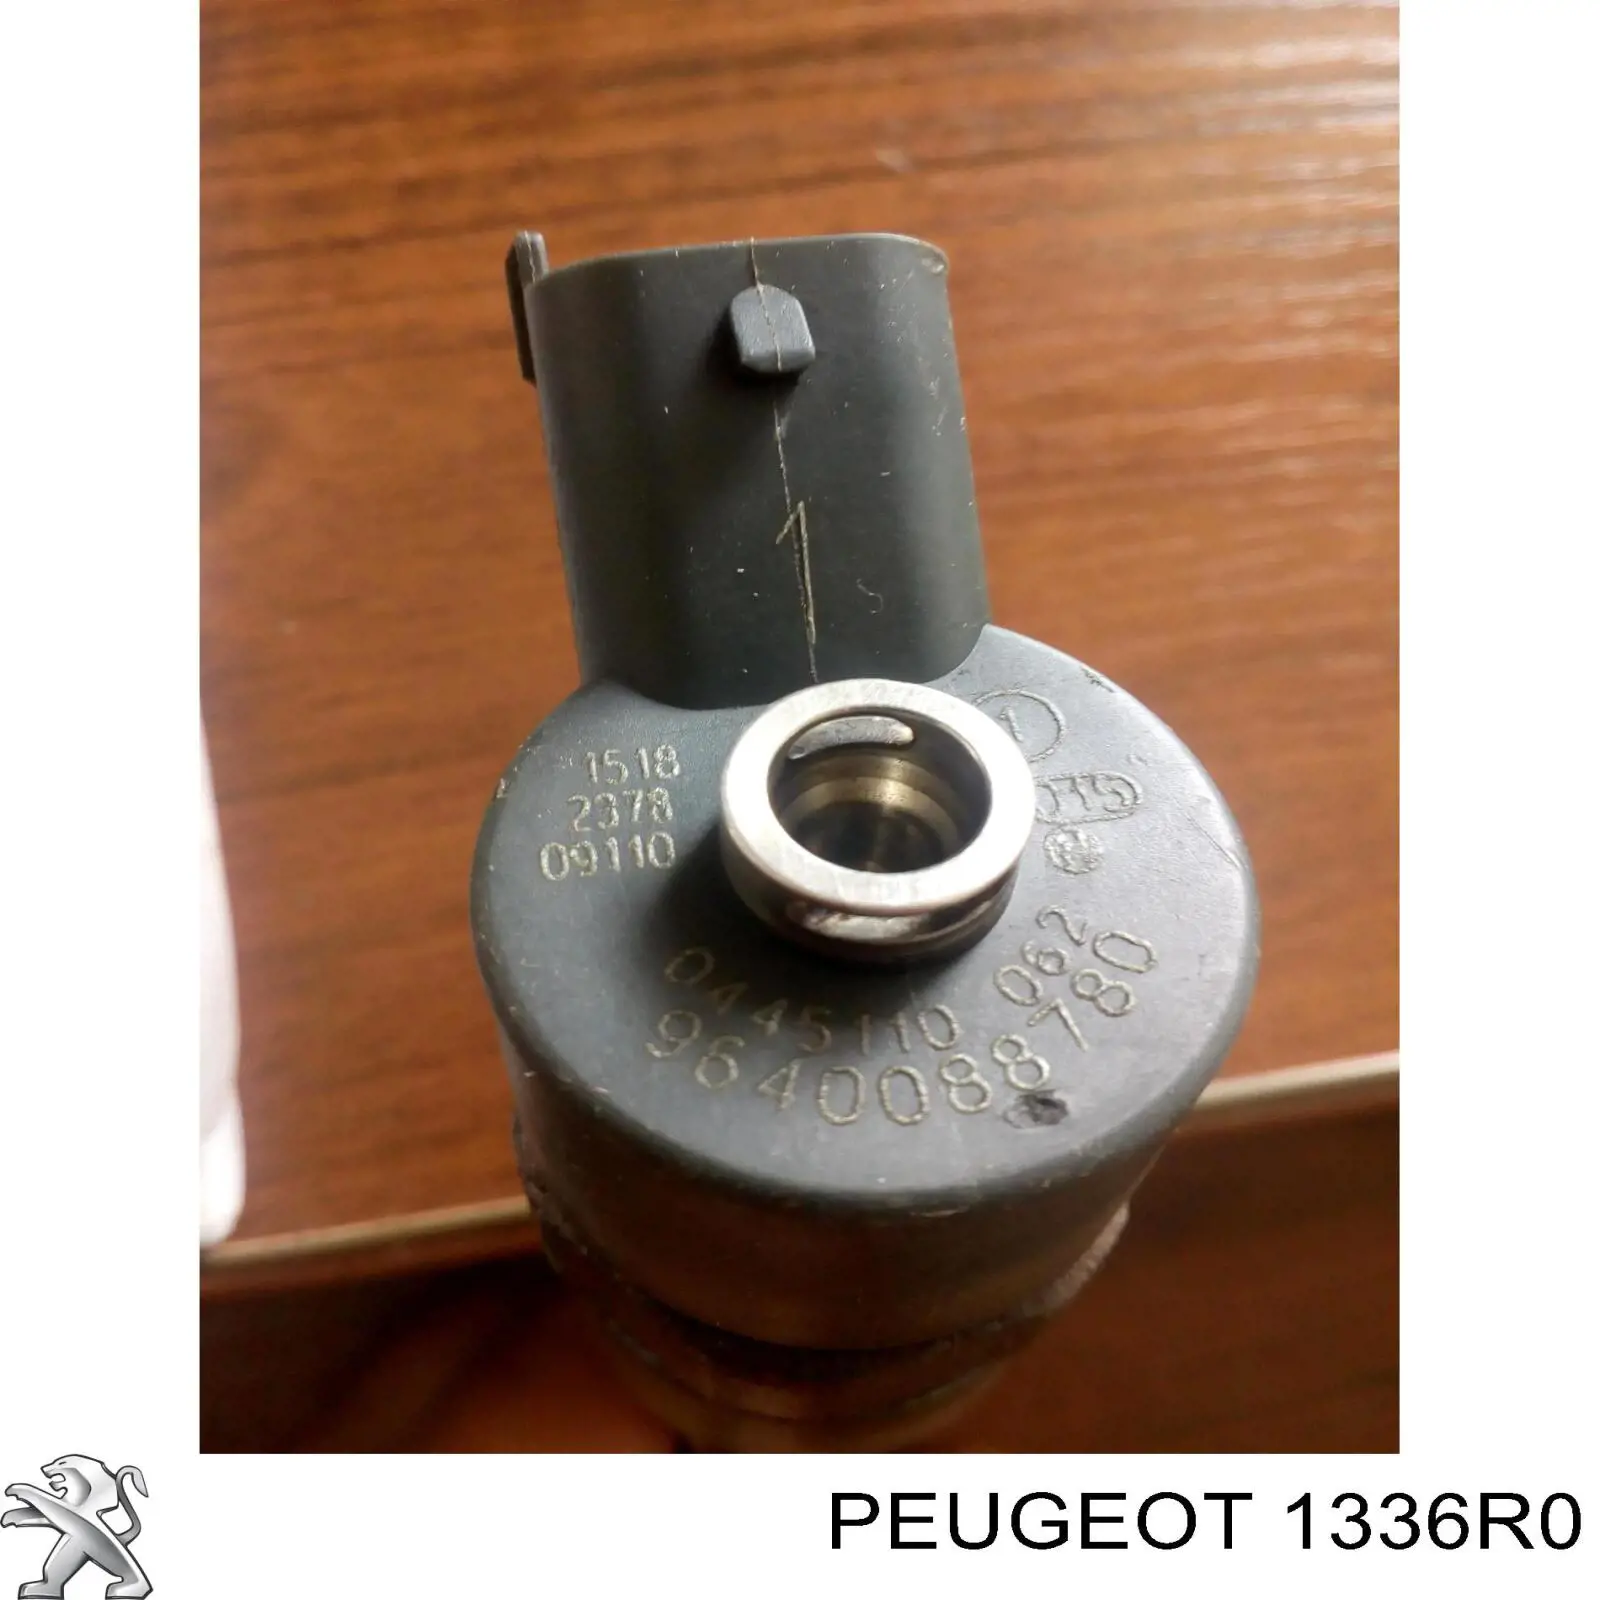 1336R0 Peugeot/Citroen flange do sistema de esfriamento (união em t)